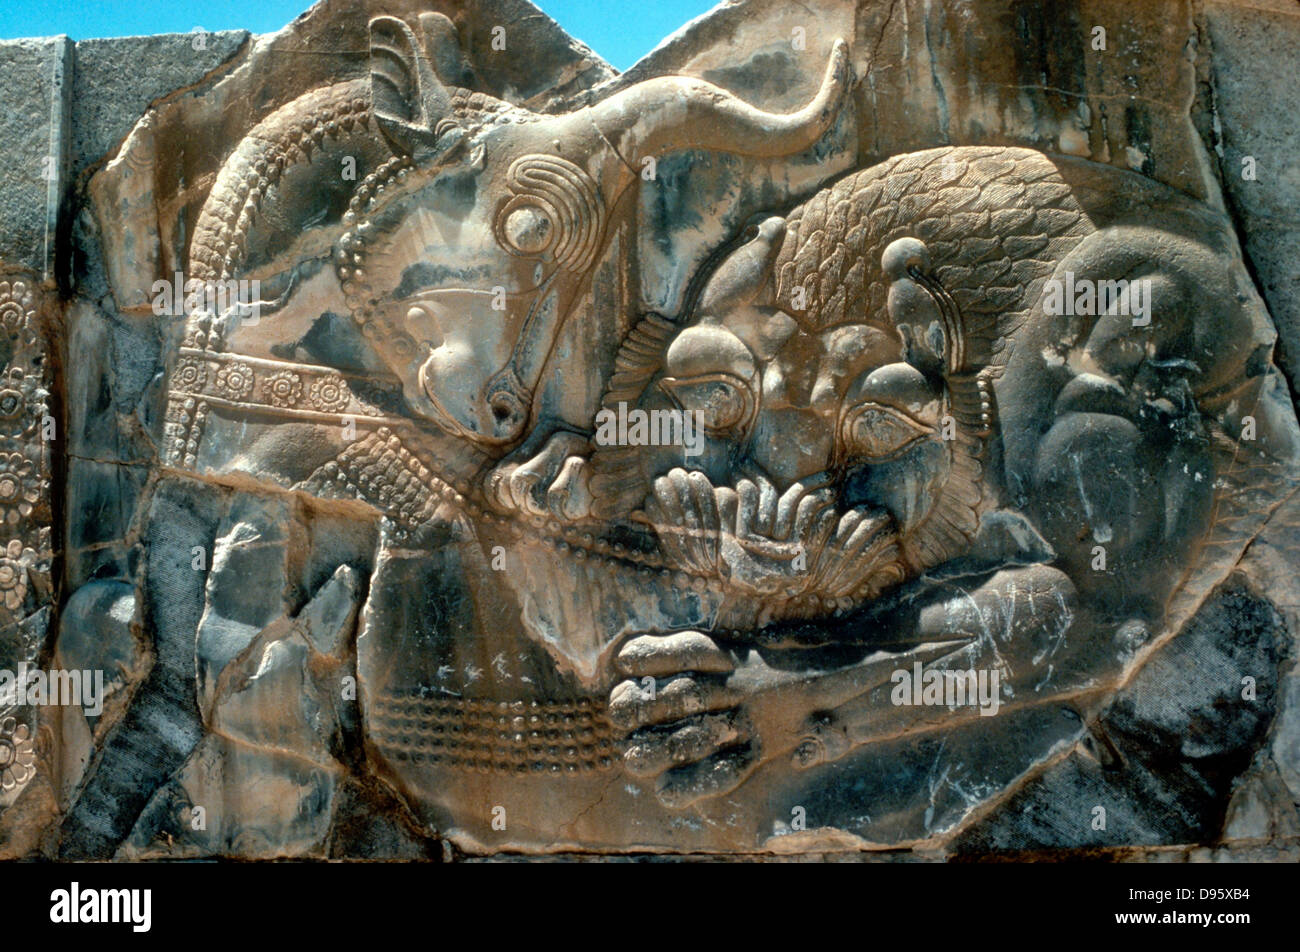 Bull y león: detalle del tallado en N ALA DE ESCALERA E en palacio del rey Persa Xerxes I (486-465 a.C.) en Persépolis. Foto de stock